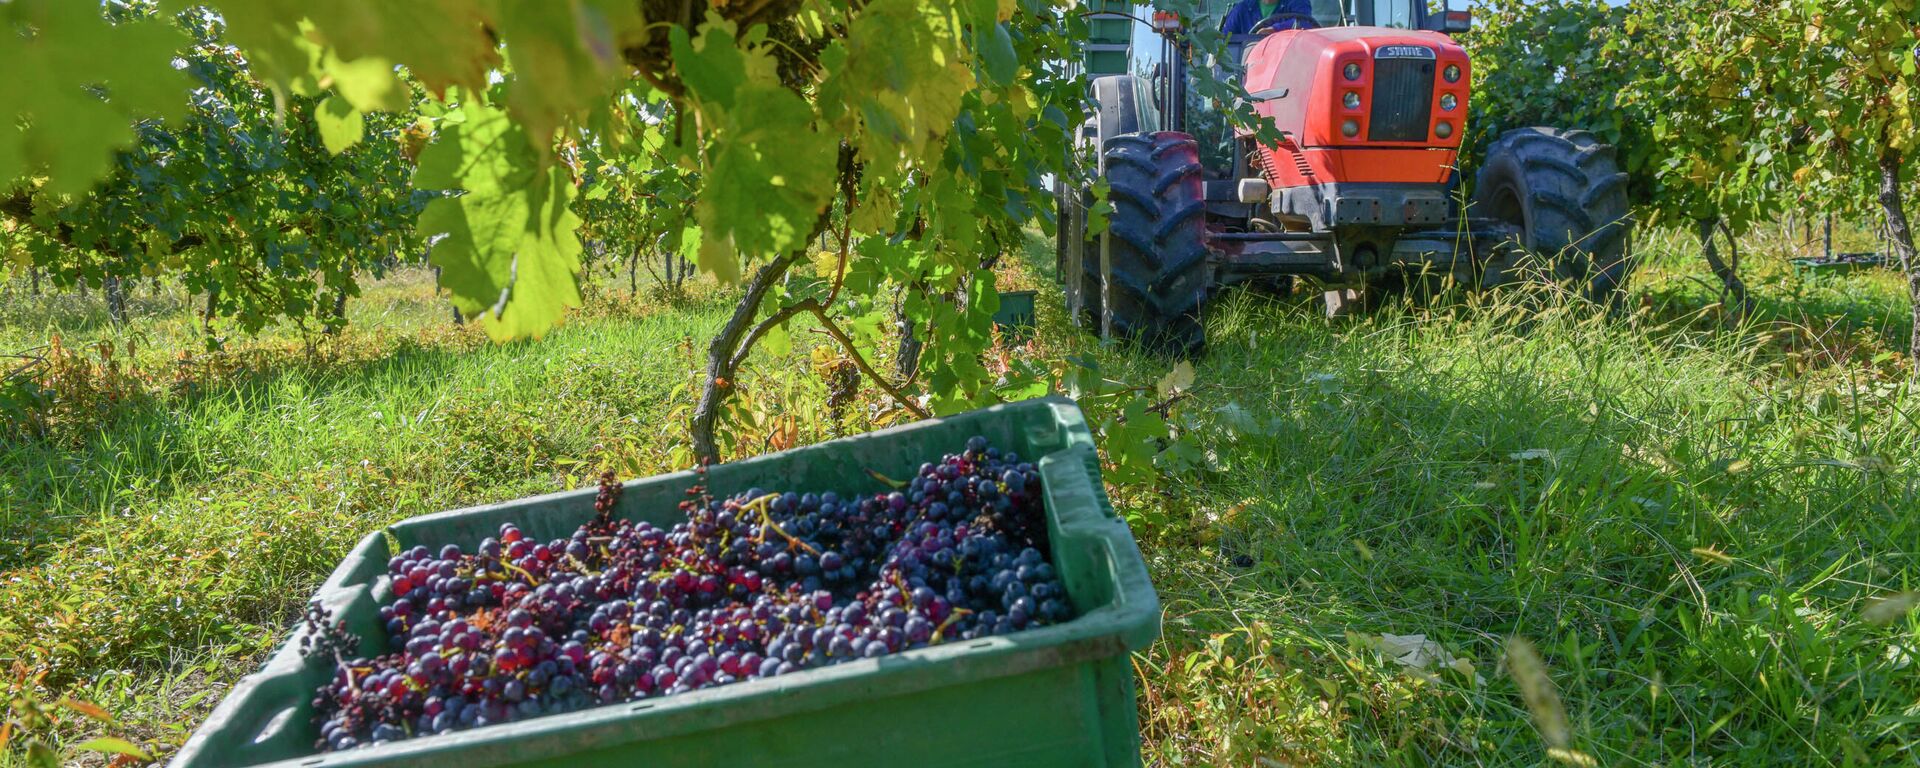 Винное дело: как собирают виноград в селе Гумиста  - Sputnik Абхазия, 1920, 13.10.2021